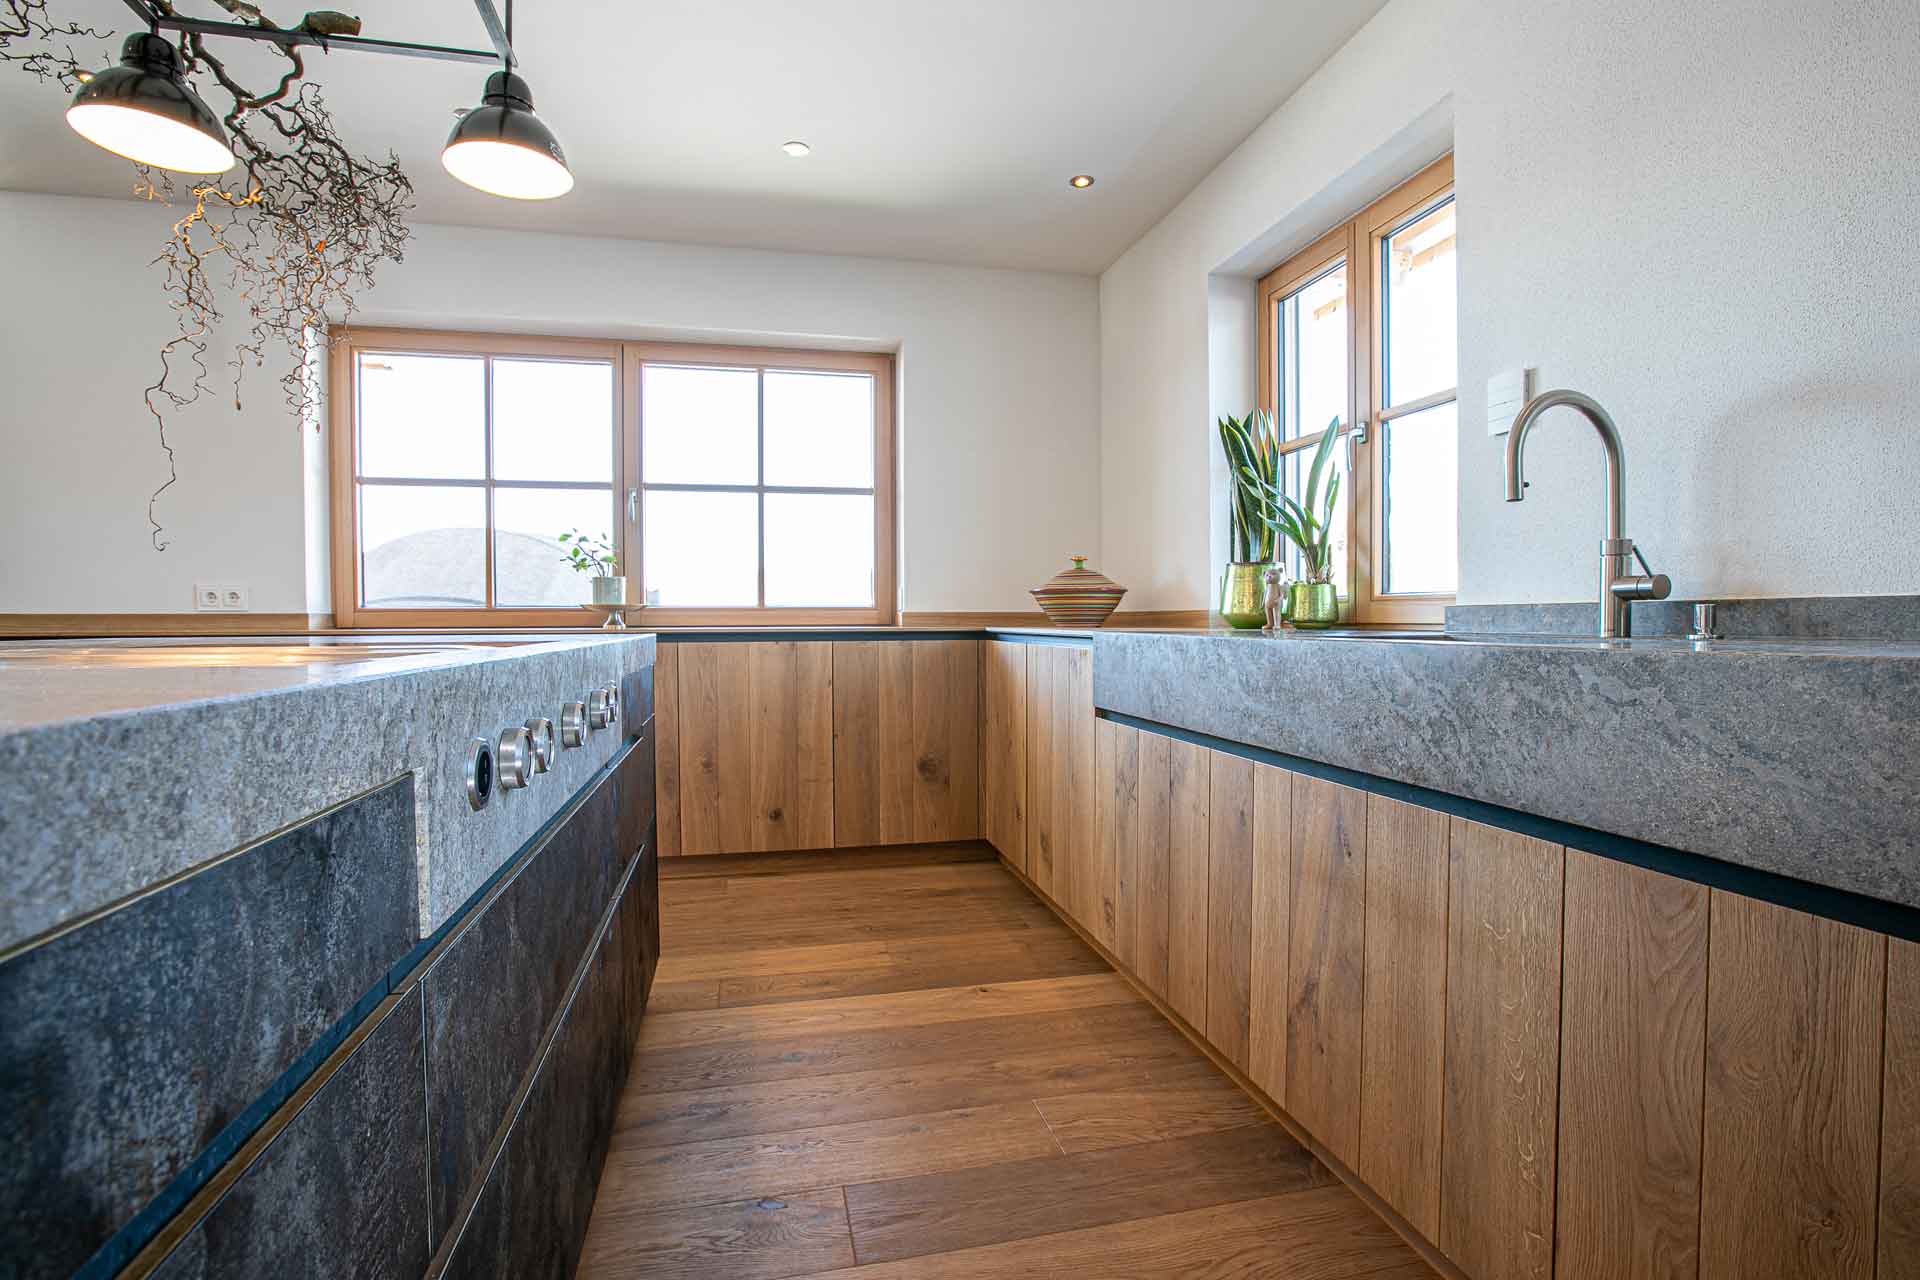 Schöne Küche aus Stein und Holz gefertigt. Zwei Fenster sorgen für viel Licht. Es gibt keinen Fließenspiegel.